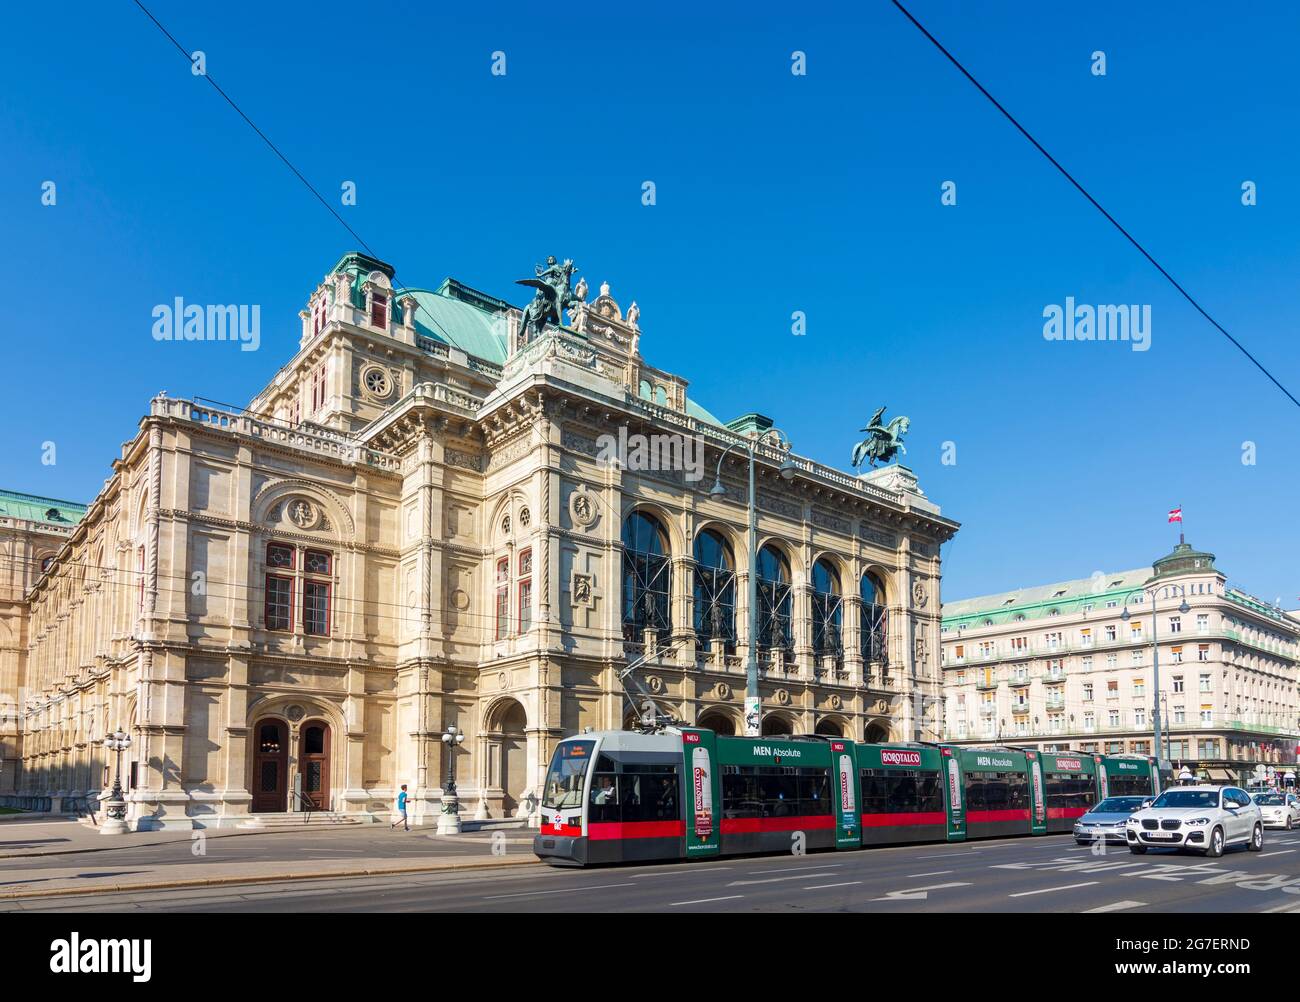 Wien, Vienne: Opéra d'Etat de Vienne (Wiener Staatsoper) en 01. Vieille ville, Vienne, Autriche Banque D'Images